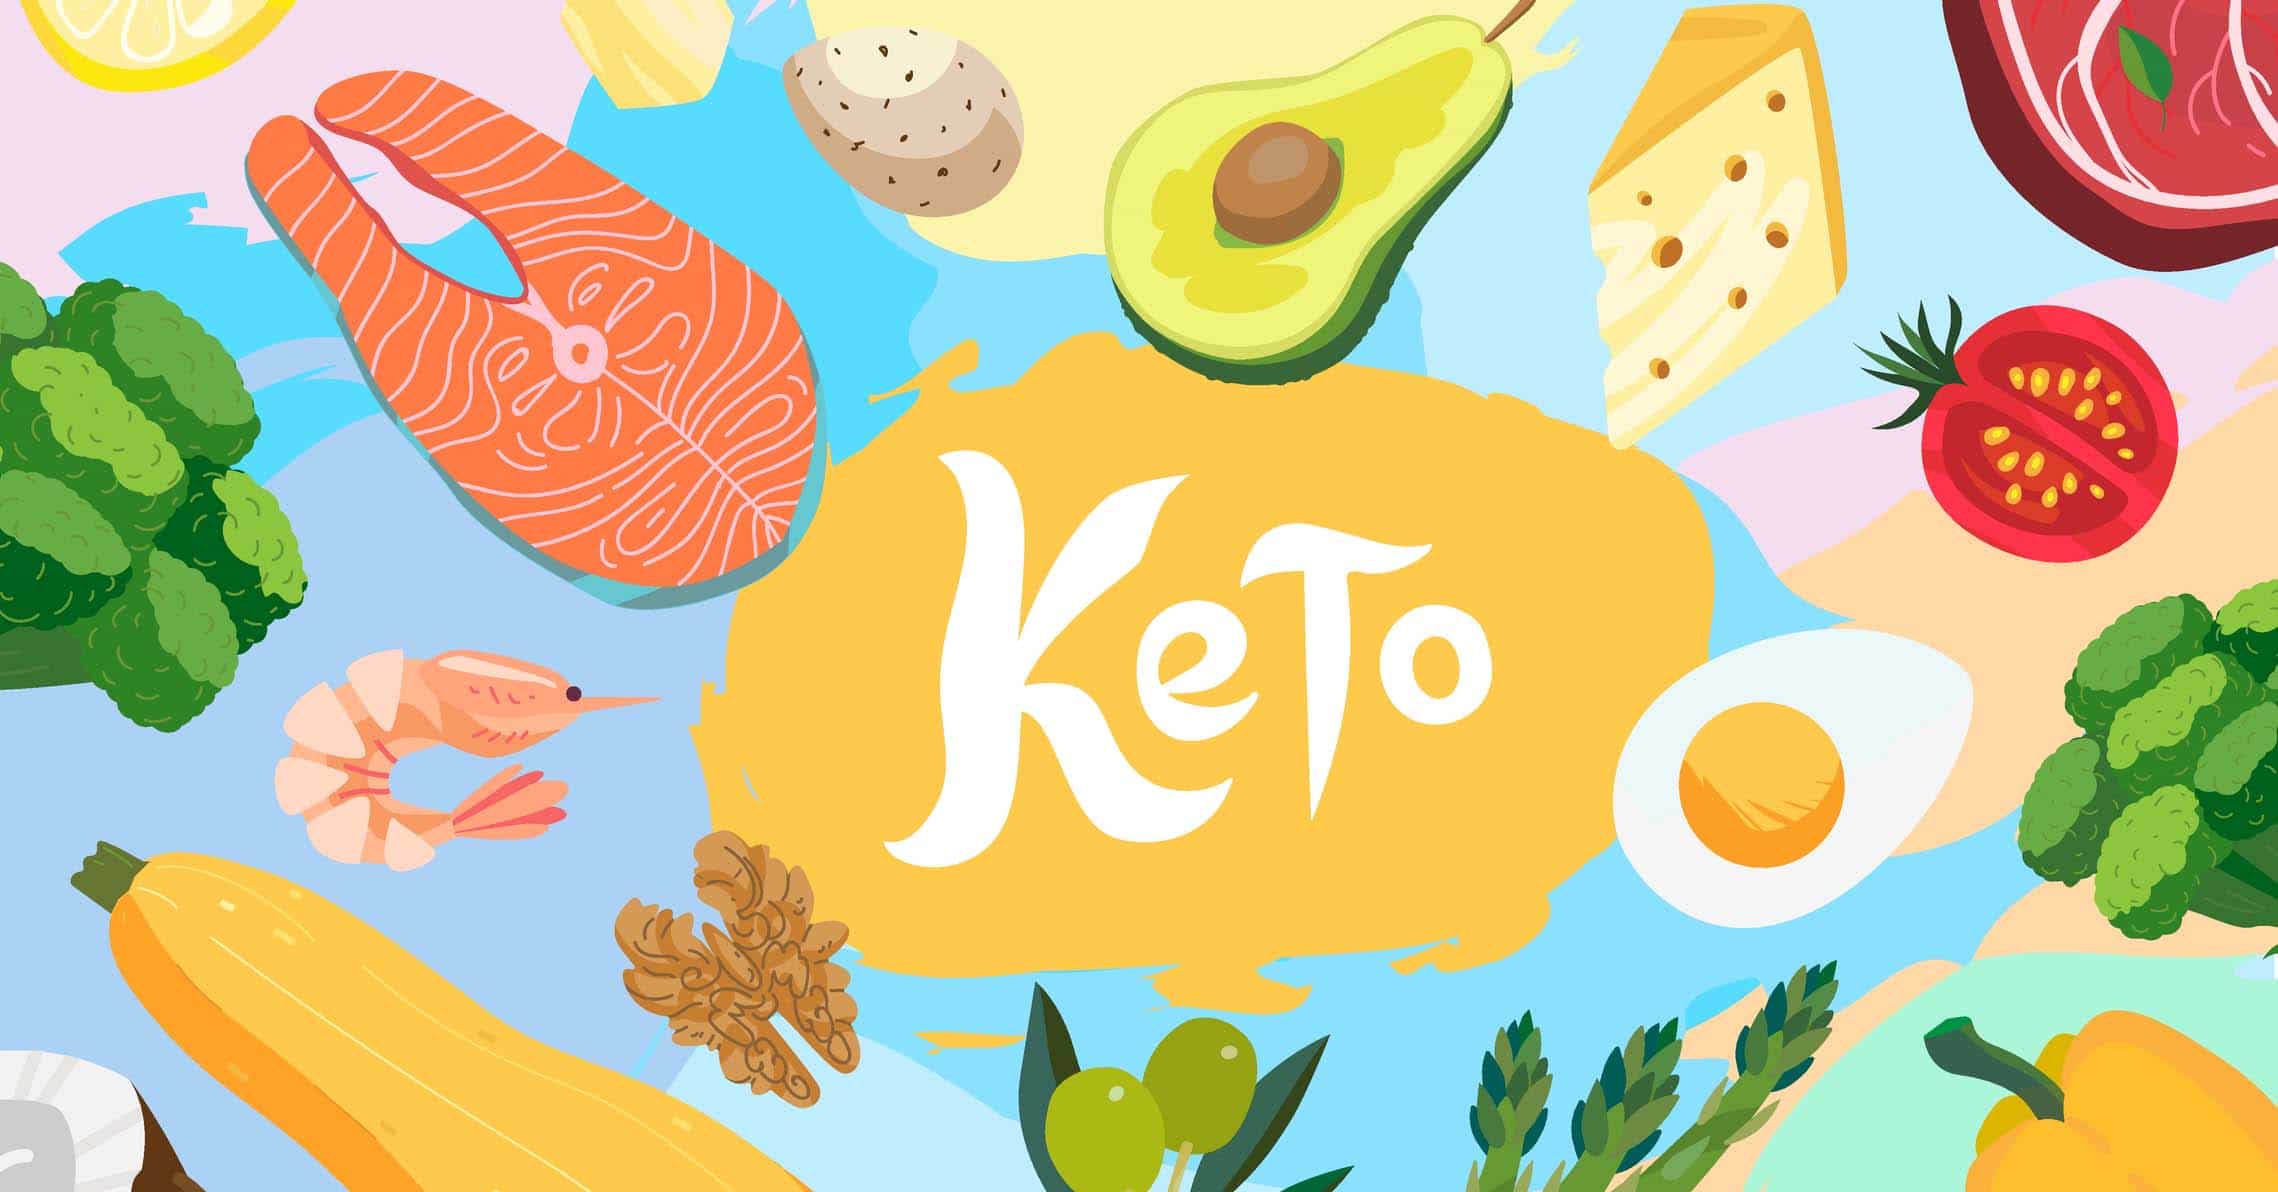 madvarer på en keto-diæt